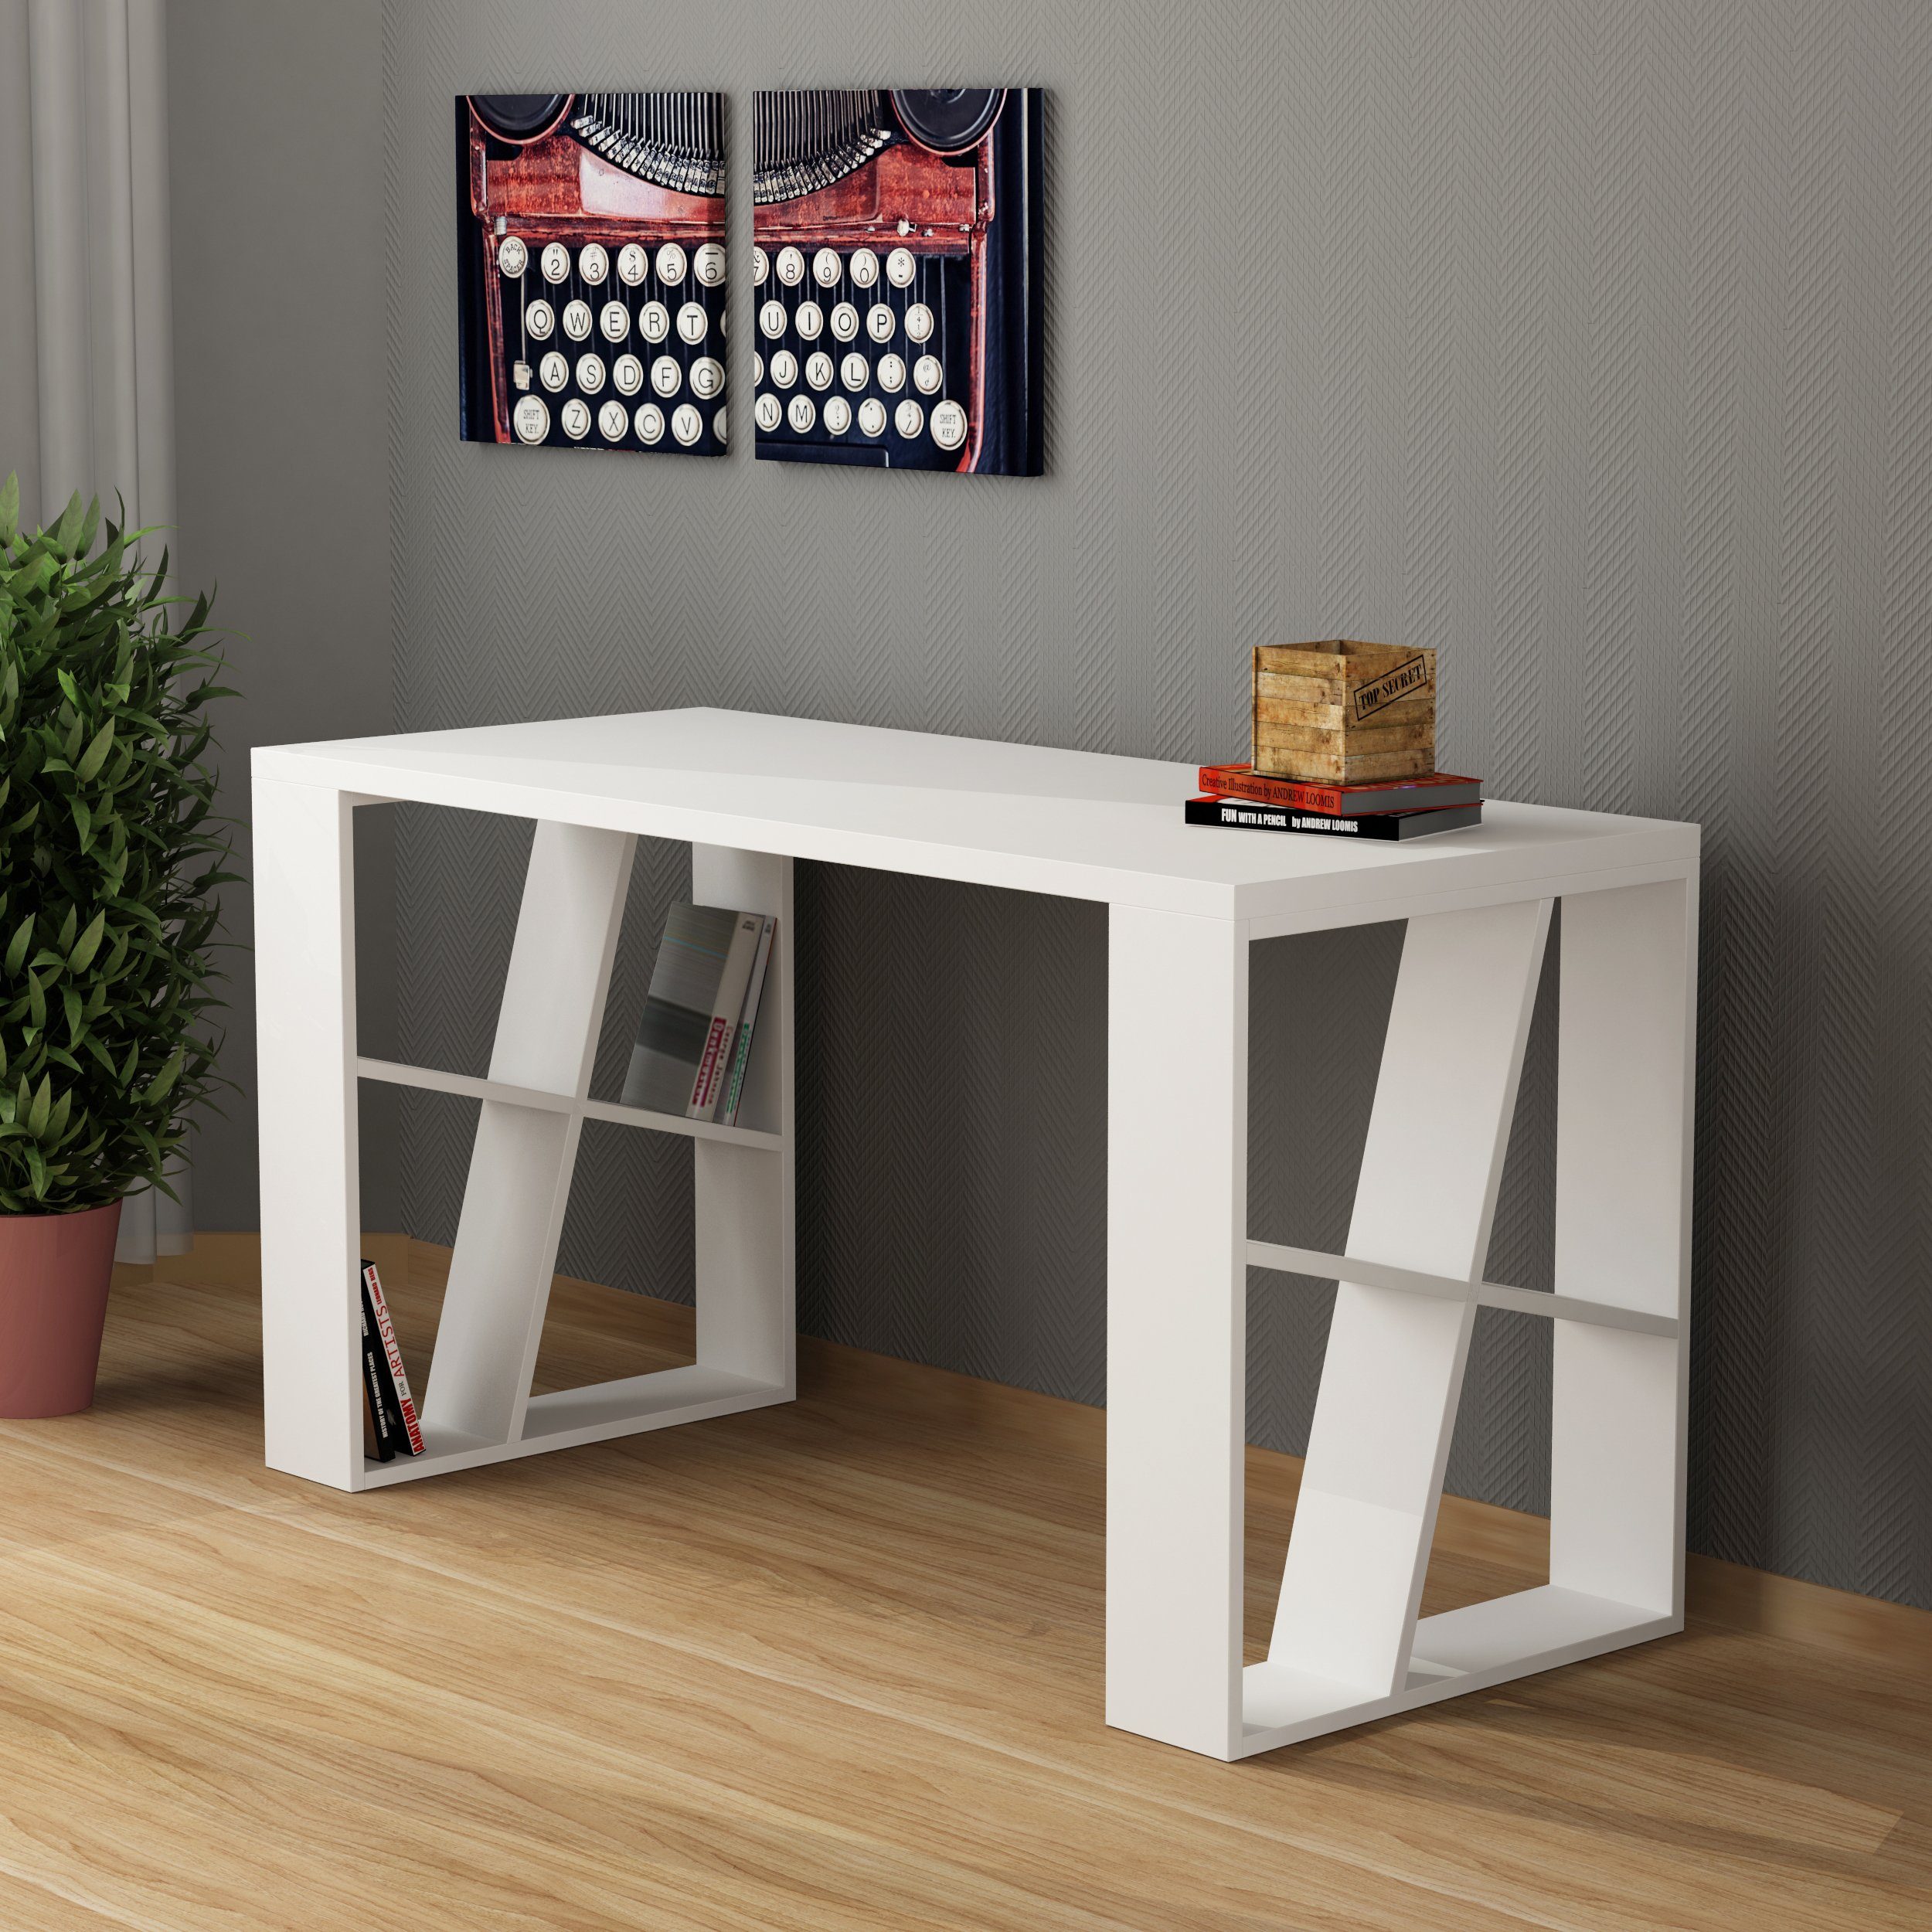 Decortie Schreibtisch Honey (1 Tisch), Moderner Schreibtischt mit Bücherregal, 137 x 60 x 75 cm Weiß | Kinderschreibtische